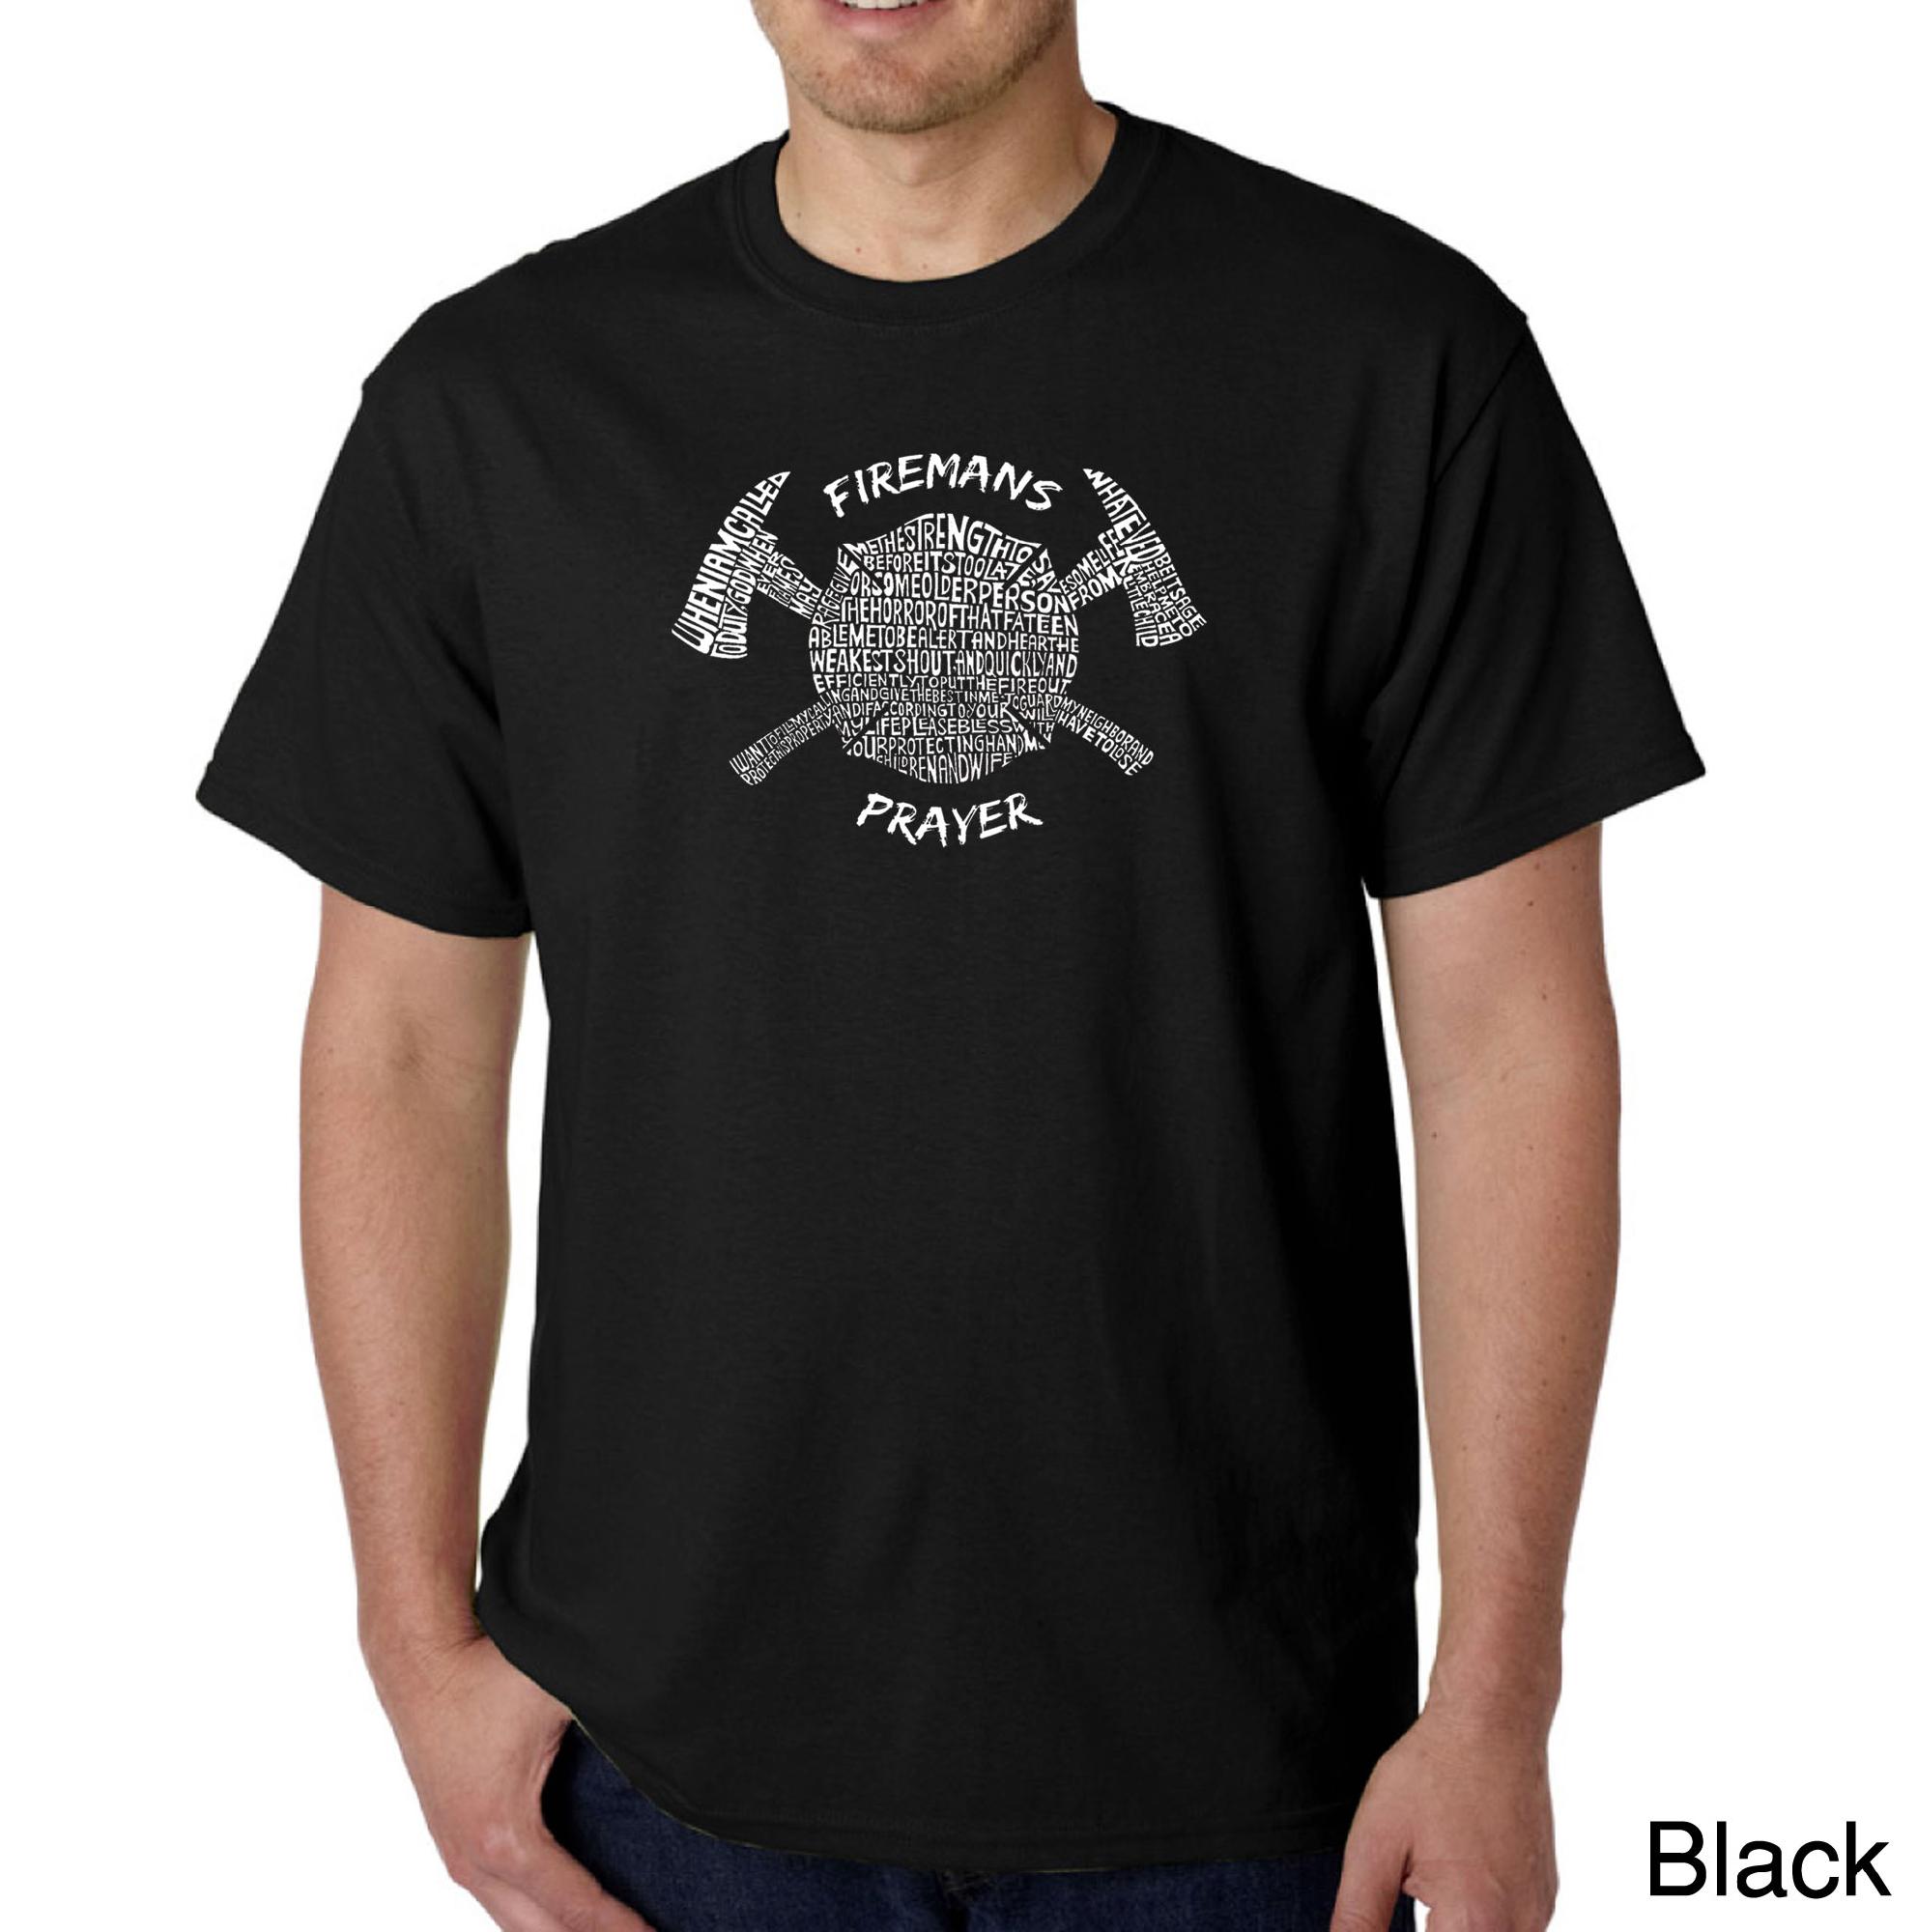 Los Angeles Pop Art Men's Word Art T-shirt - Fireman's Prayer